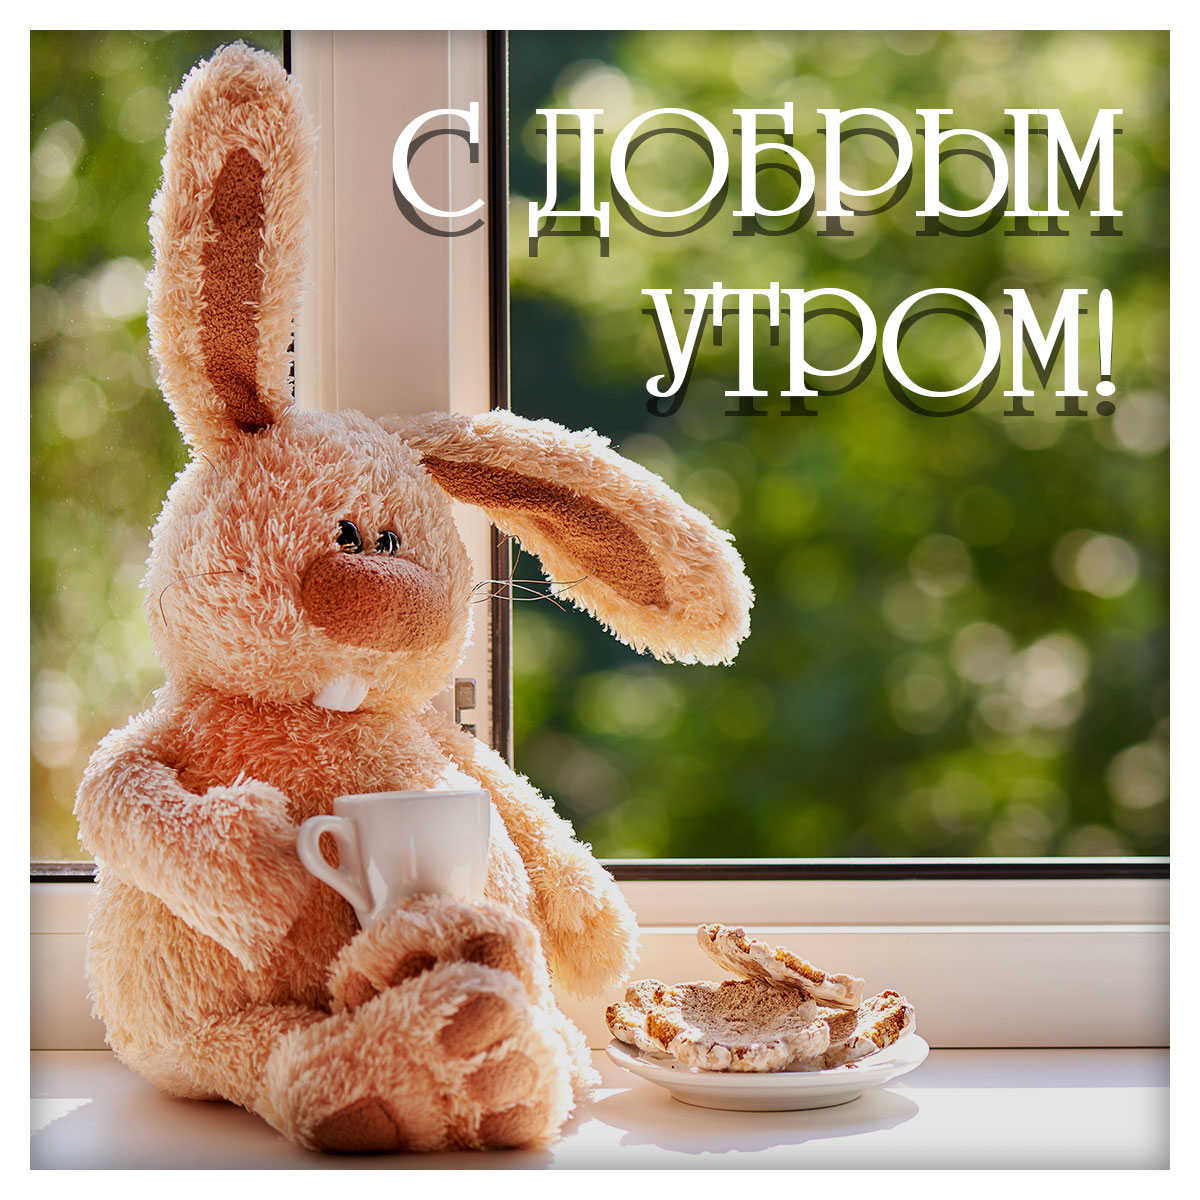 Открытка с добрым утром - плюшевый кролик с чайной кружкой и хлебными тостами сидит на подоконнике.